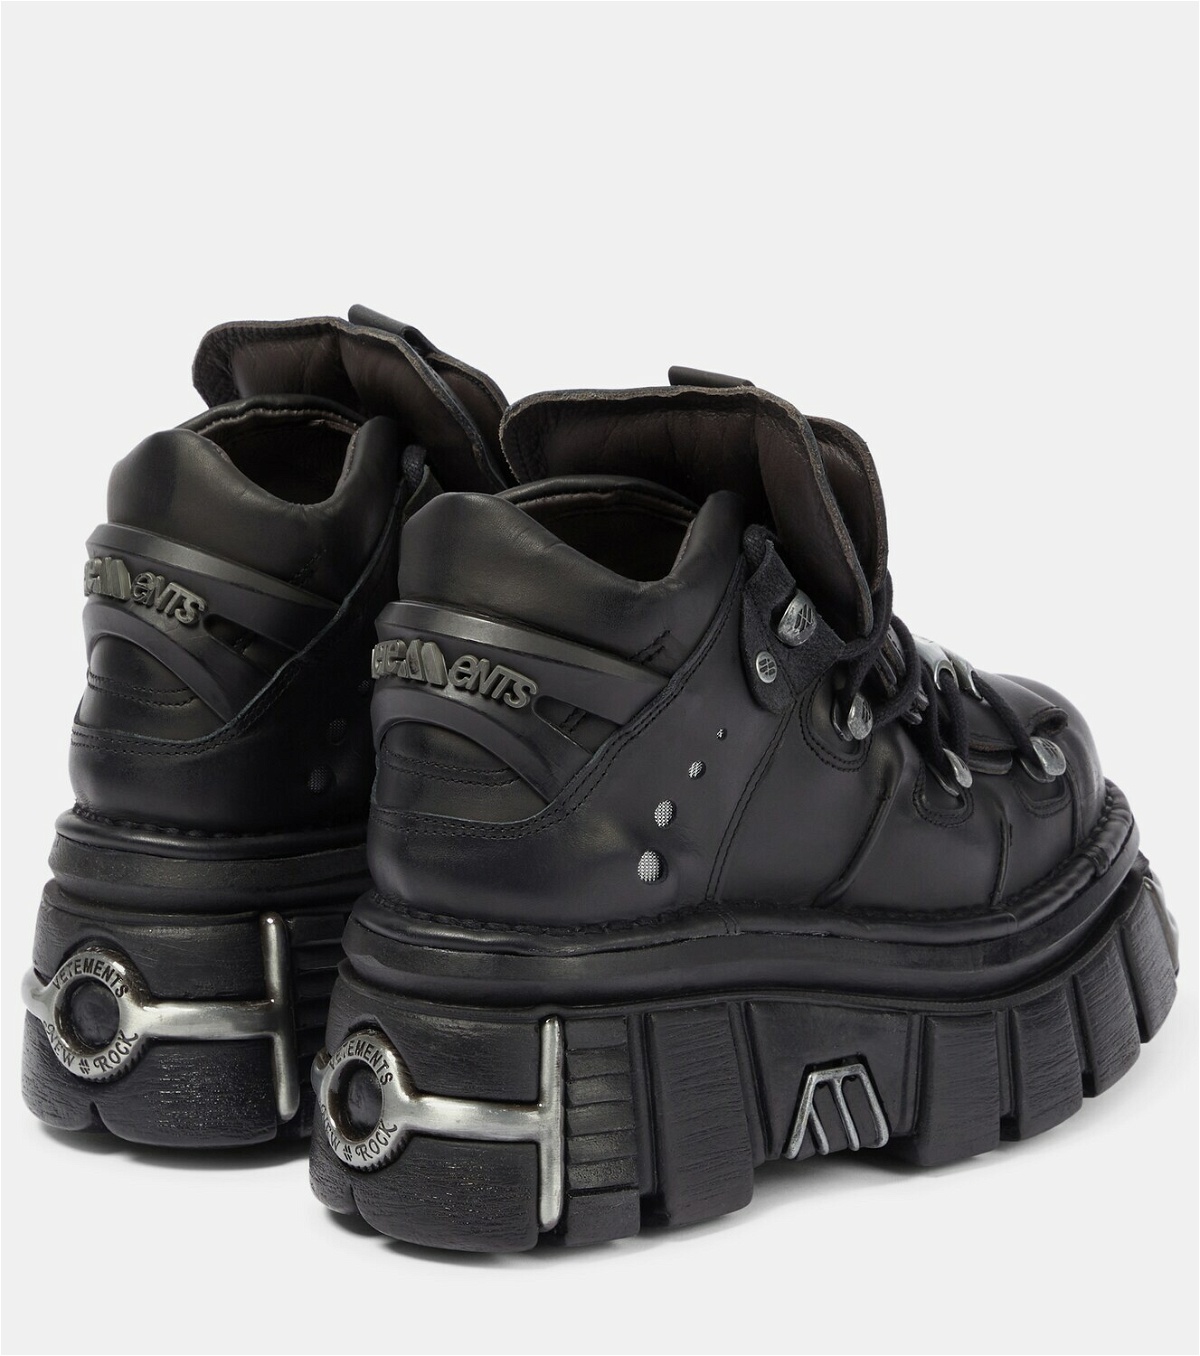 Vetements - x New Rock leather platform sneakers Vetements